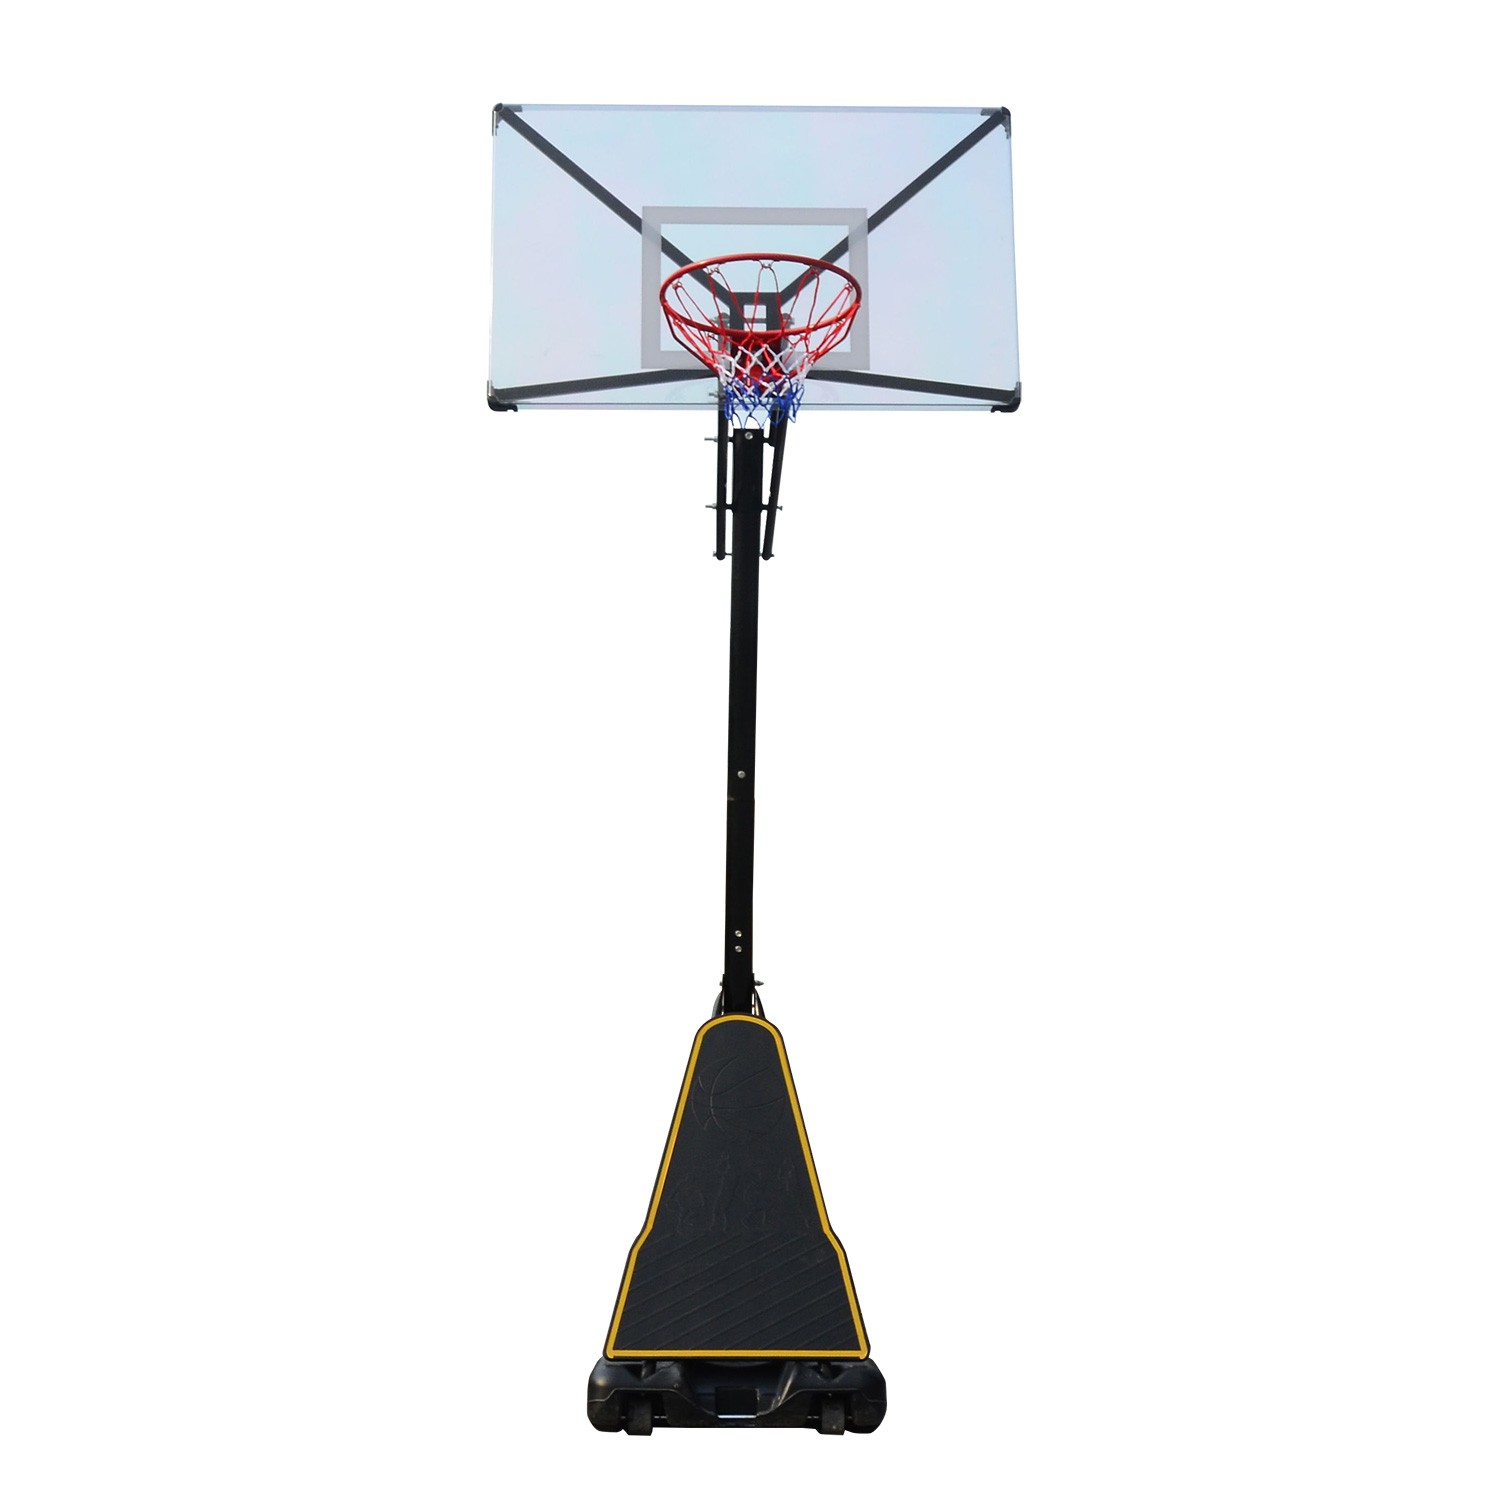 Баскетбольная мобильная стойка DFC STAND54T 136x80см поликарбонат, изображение 2